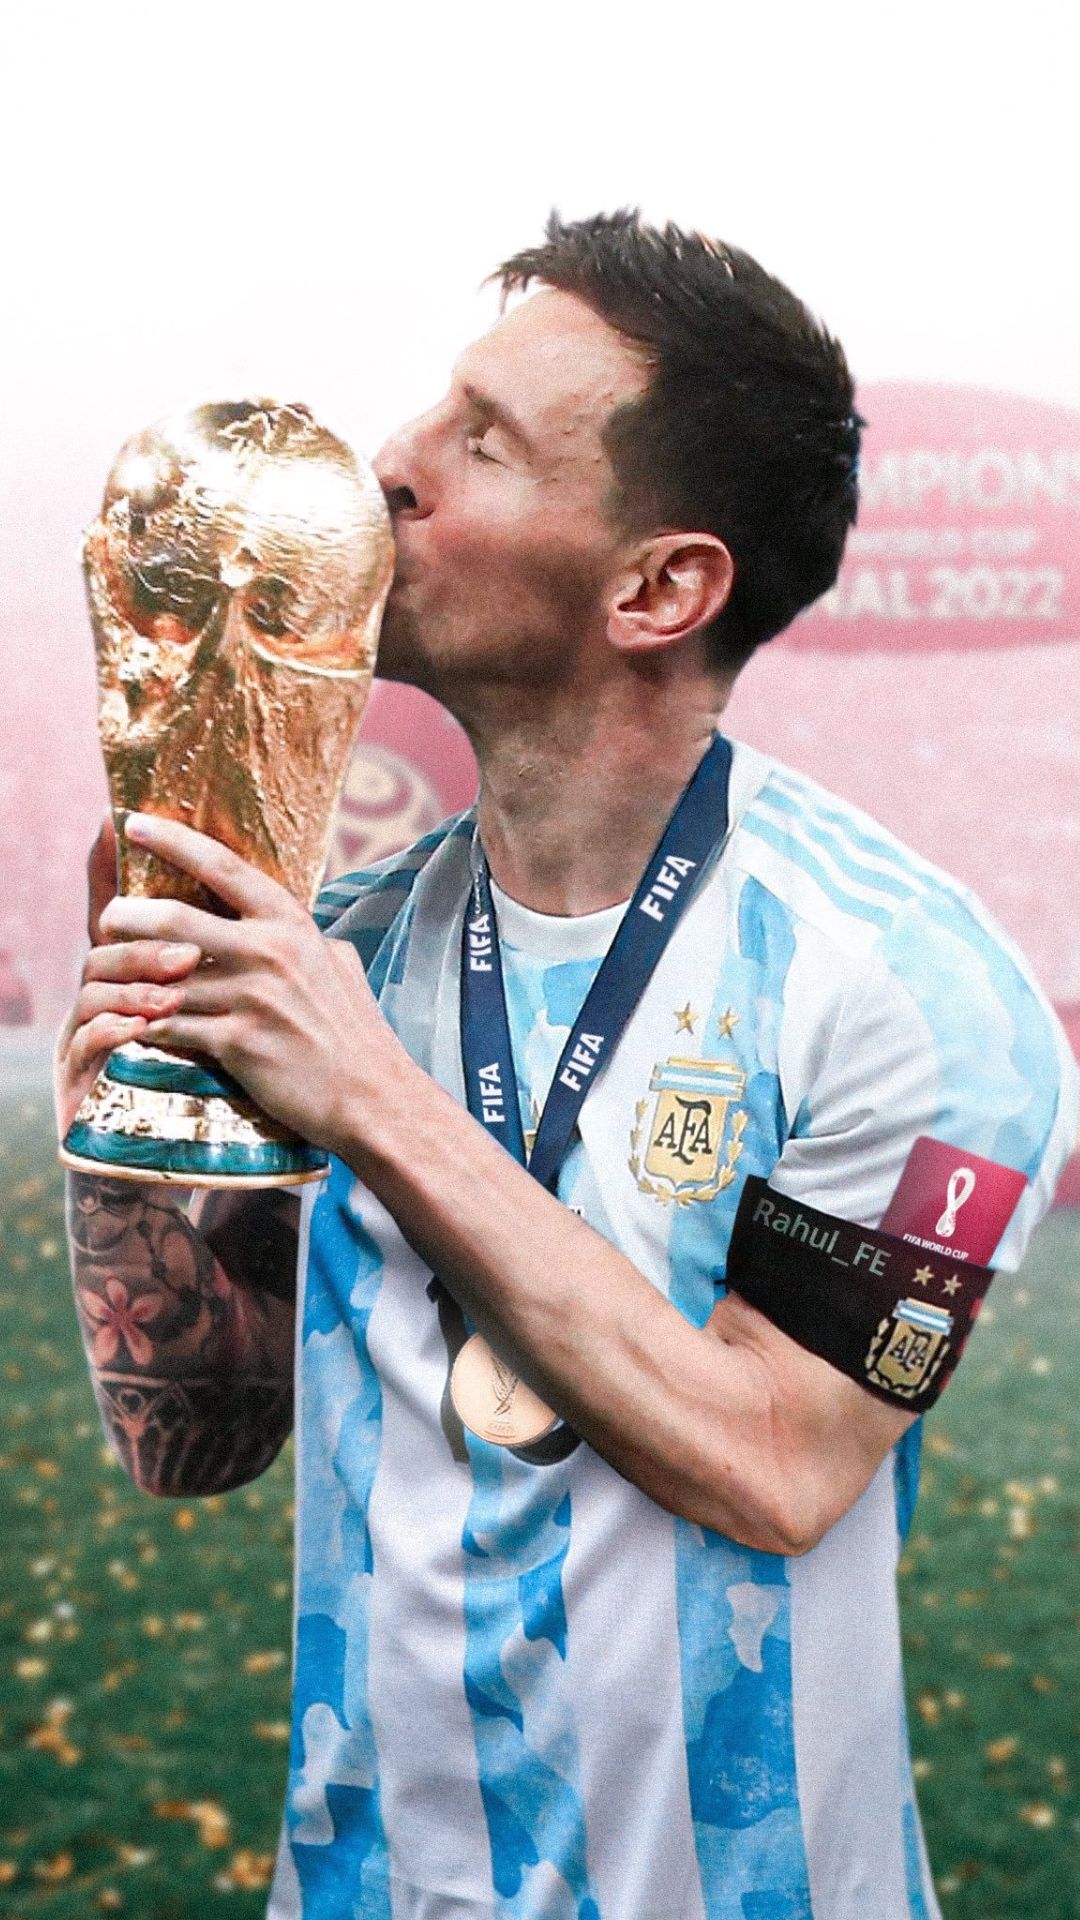 Được biết đến như một trong những cầu thủ bóng đá xuất sắc nhất mọi thời đại, Messi đã trở thành biểu tượng của bóng đá Argentina và được yêu mến rộng rãi trên khắp thế giới. Hãy xem những hình nền đẹp về anh ấy để cảm nhận sự vĩ đại của Messi!